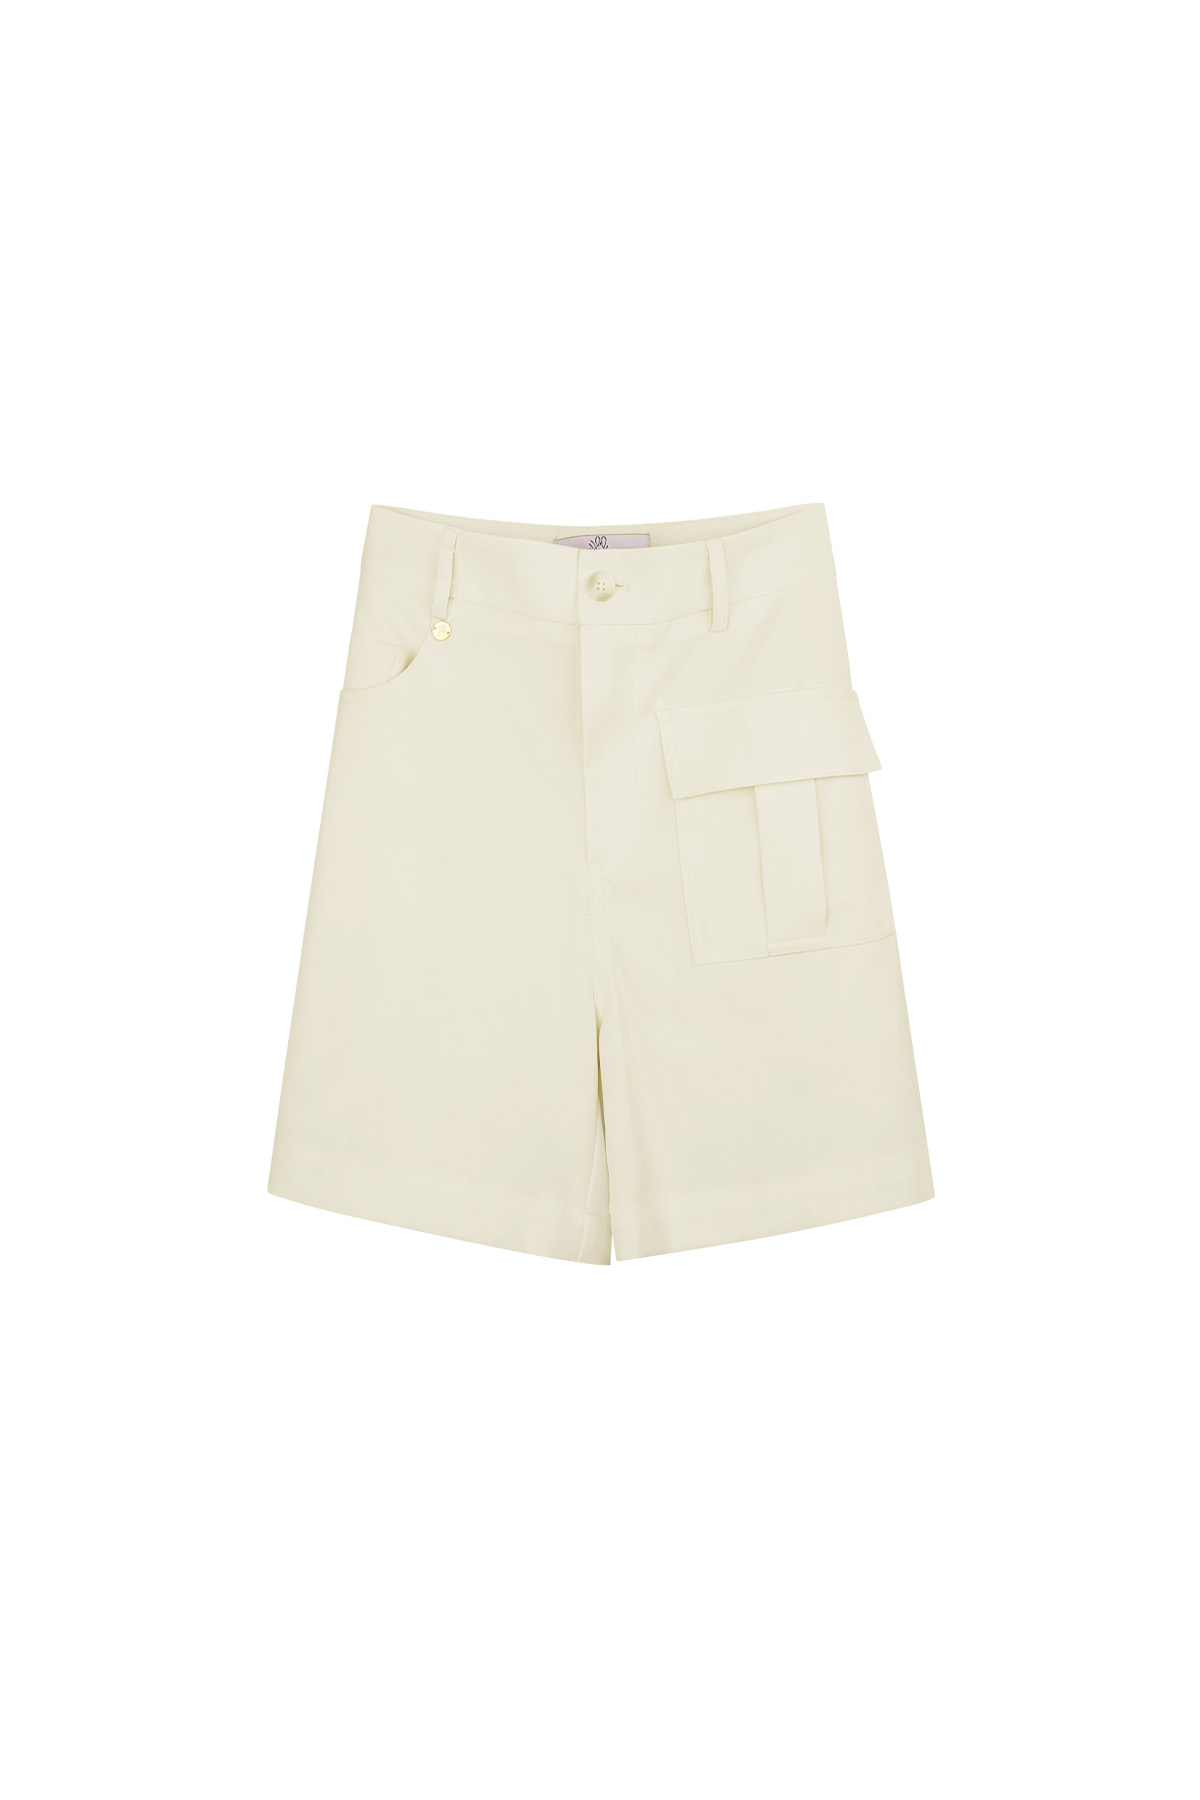 Shorts mit Tasche – gebrochenes Weiß  h5 